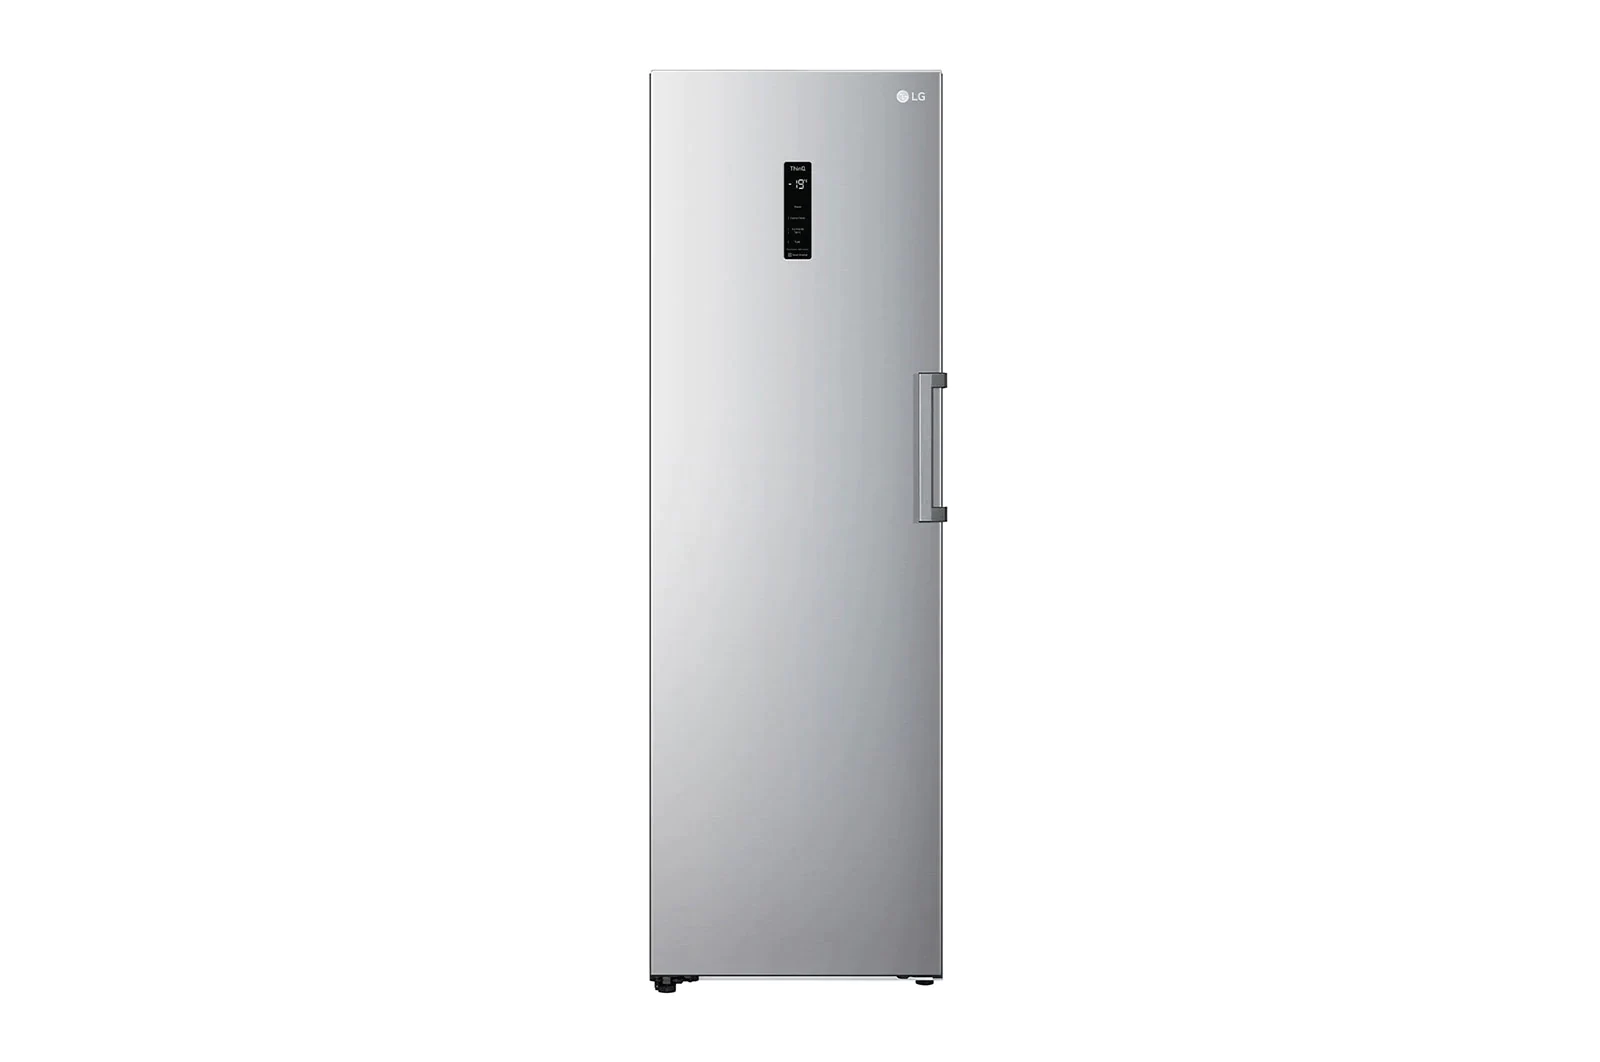 LG Single Door 355 Liters Standing Freezer FRZ 414 ELFM product image